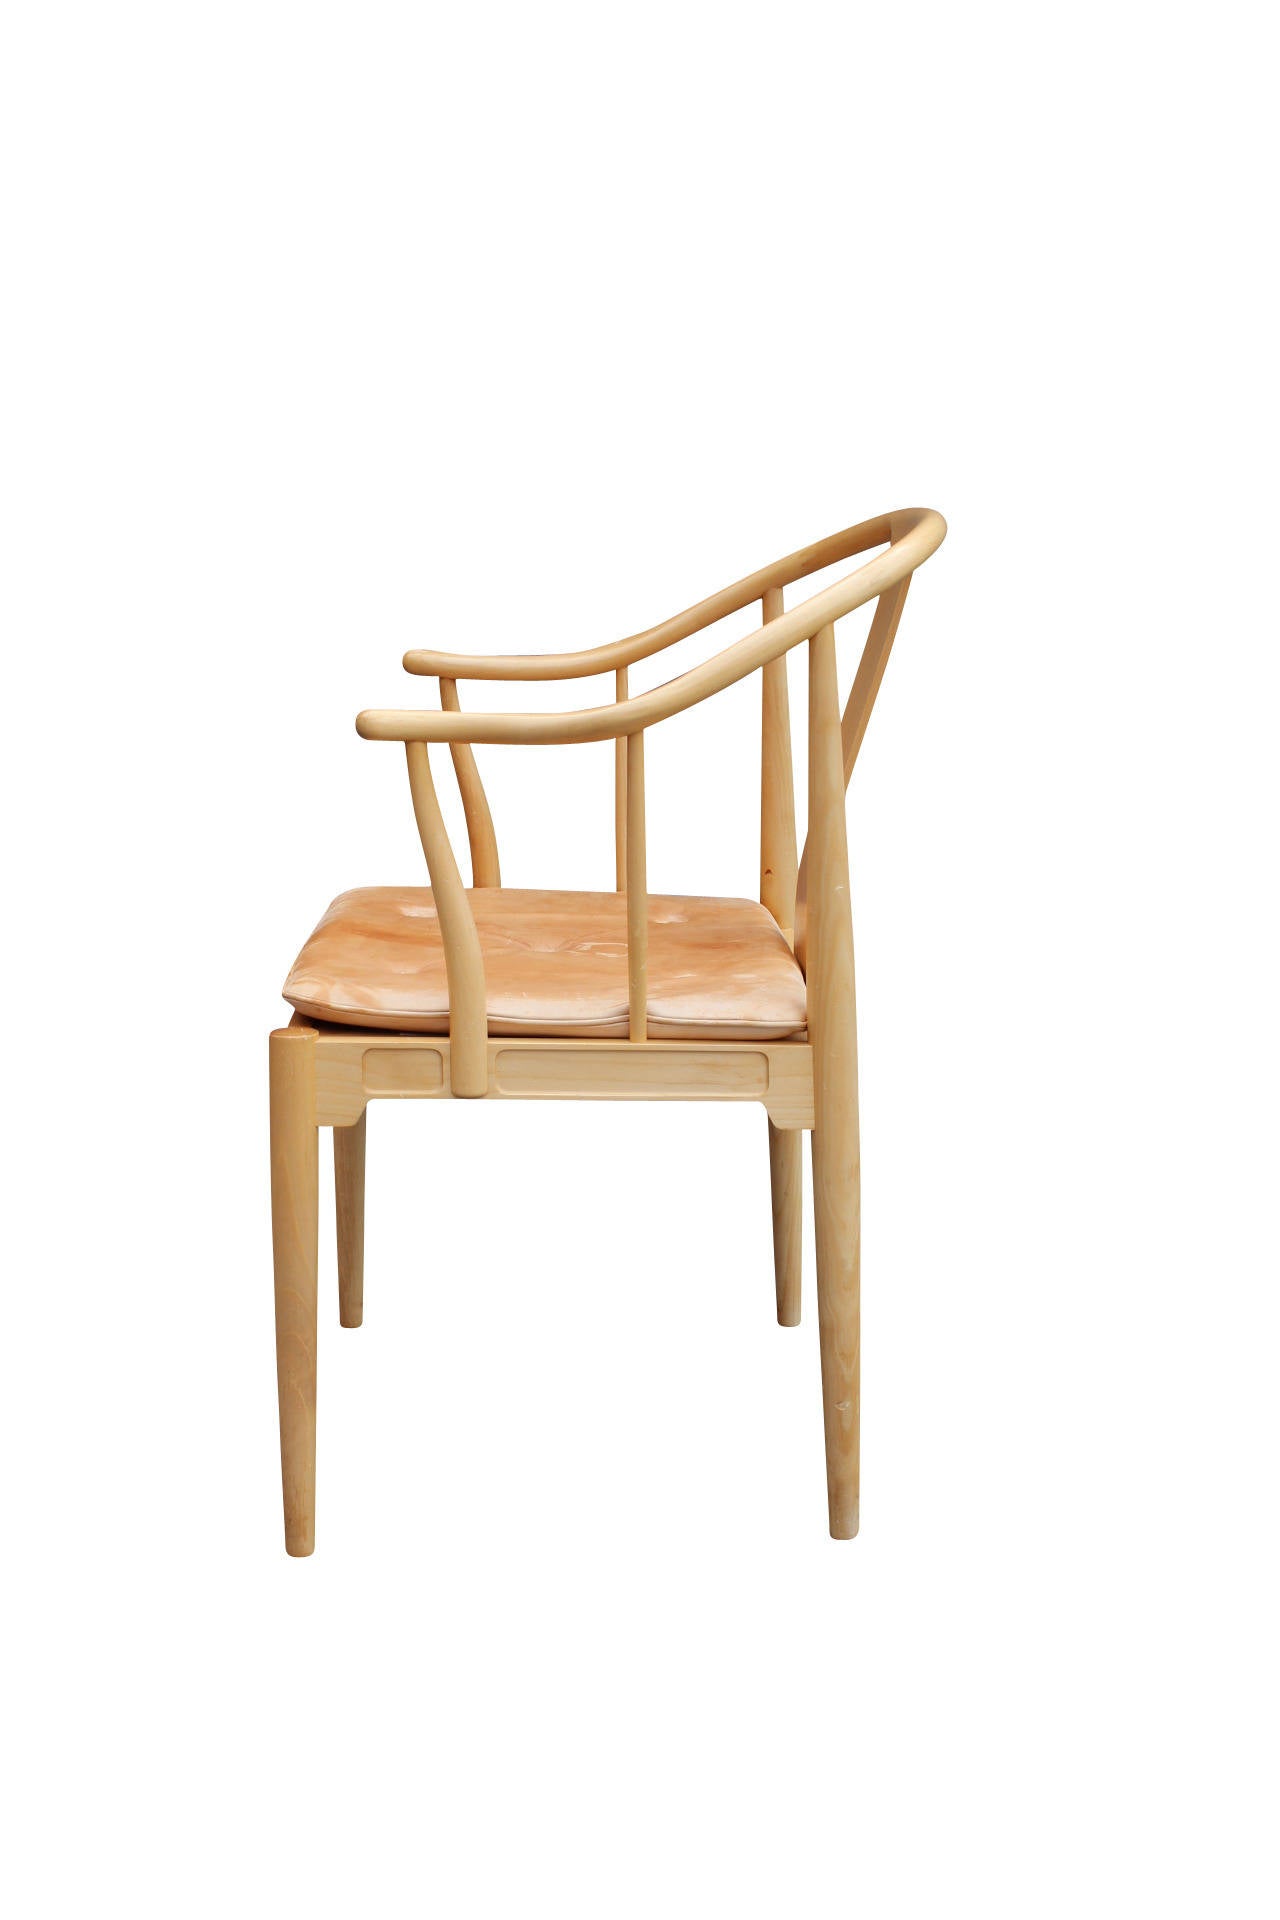 Scandinavian Modern The China Chair, Model 4283 by Hans J. Wegner and Fritz Hansen, 1989